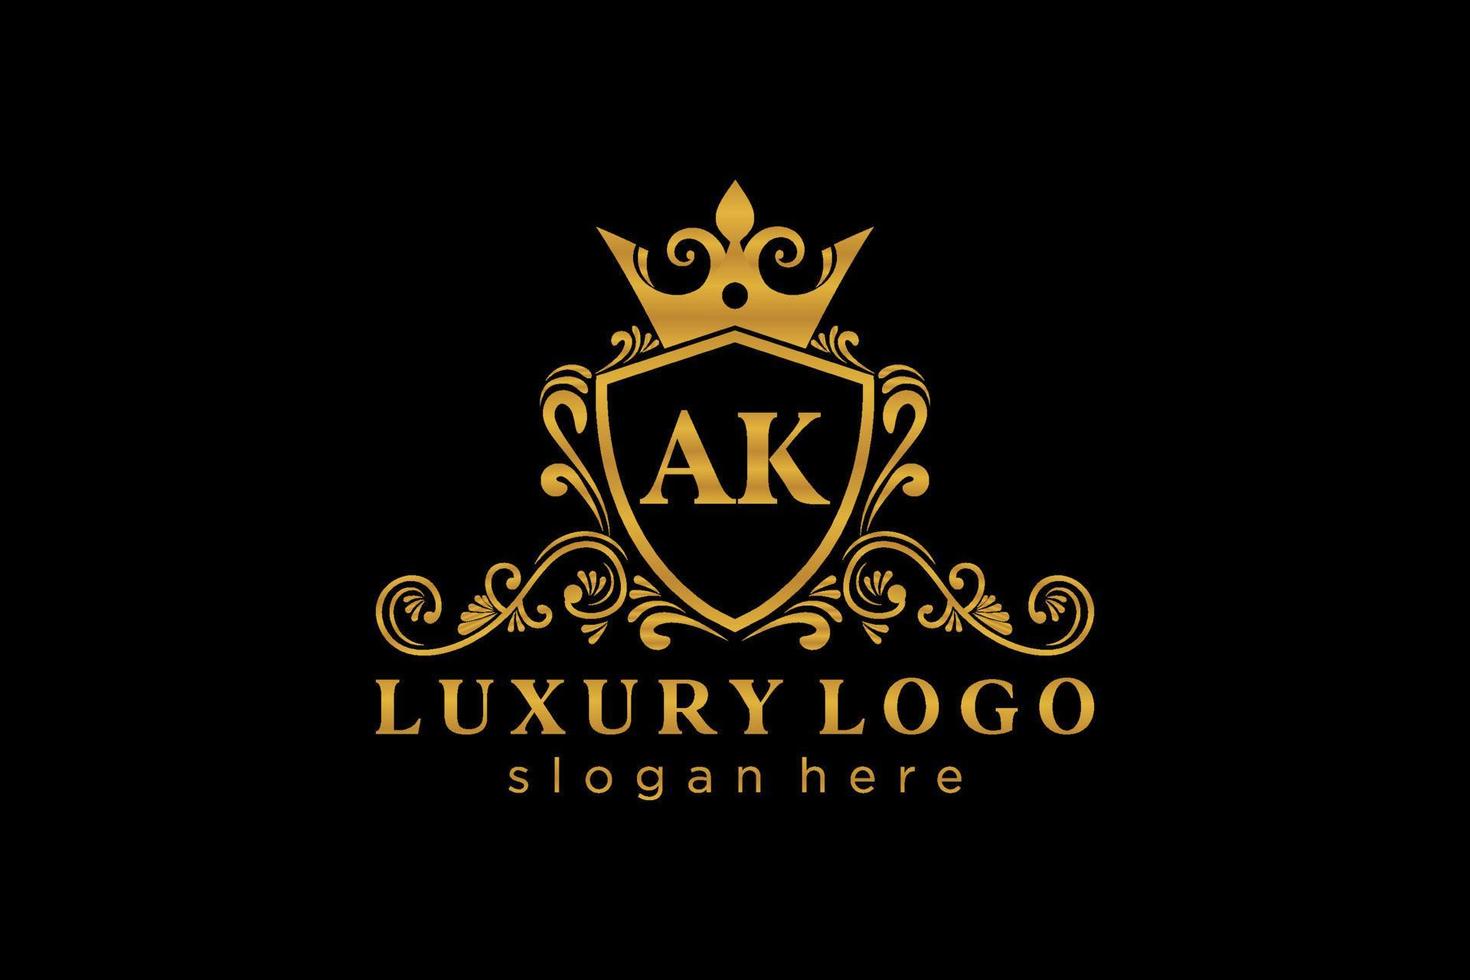 modèle initial de logo de luxe royal de lettre ak dans l'art vectoriel pour le restaurant, la royauté, la boutique, le café, l'hôtel, l'héraldique, les bijoux, la mode et d'autres illustrations vectorielles.